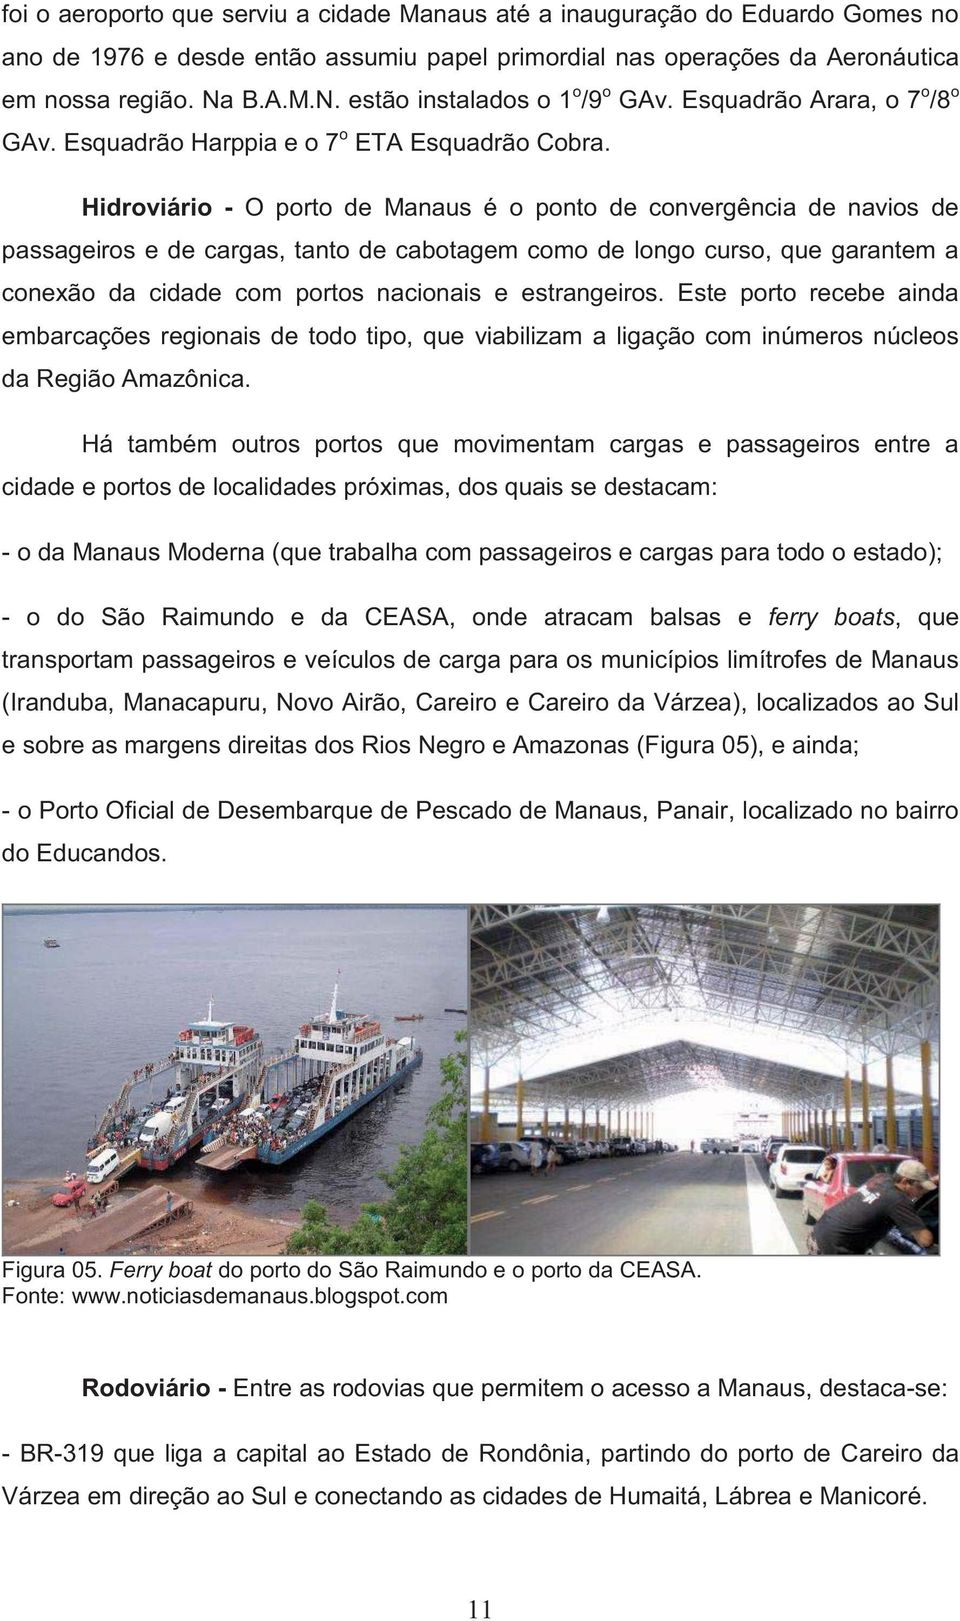 Hidroviário - O porto de Manaus é o ponto de convergência de navios de passageiros e de cargas, tanto de cabotagem como de longo curso, que garantem a conexão da cidade com portos nacionais e